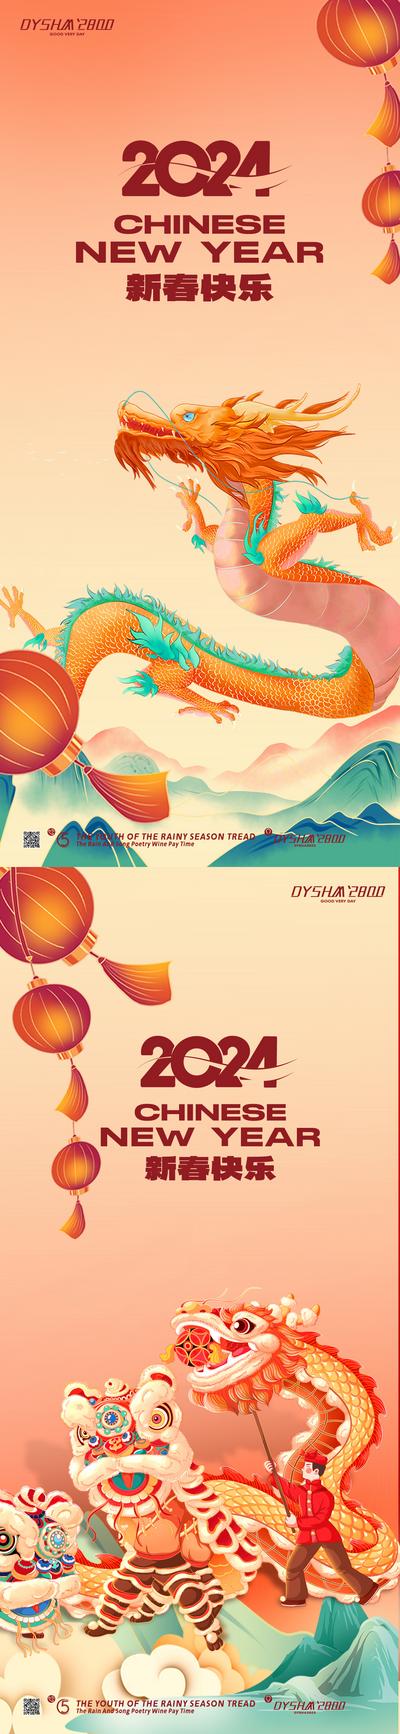 南门网 广告 海报 新年 元旦 春节 新春 2024 传统节日 龙年 系列